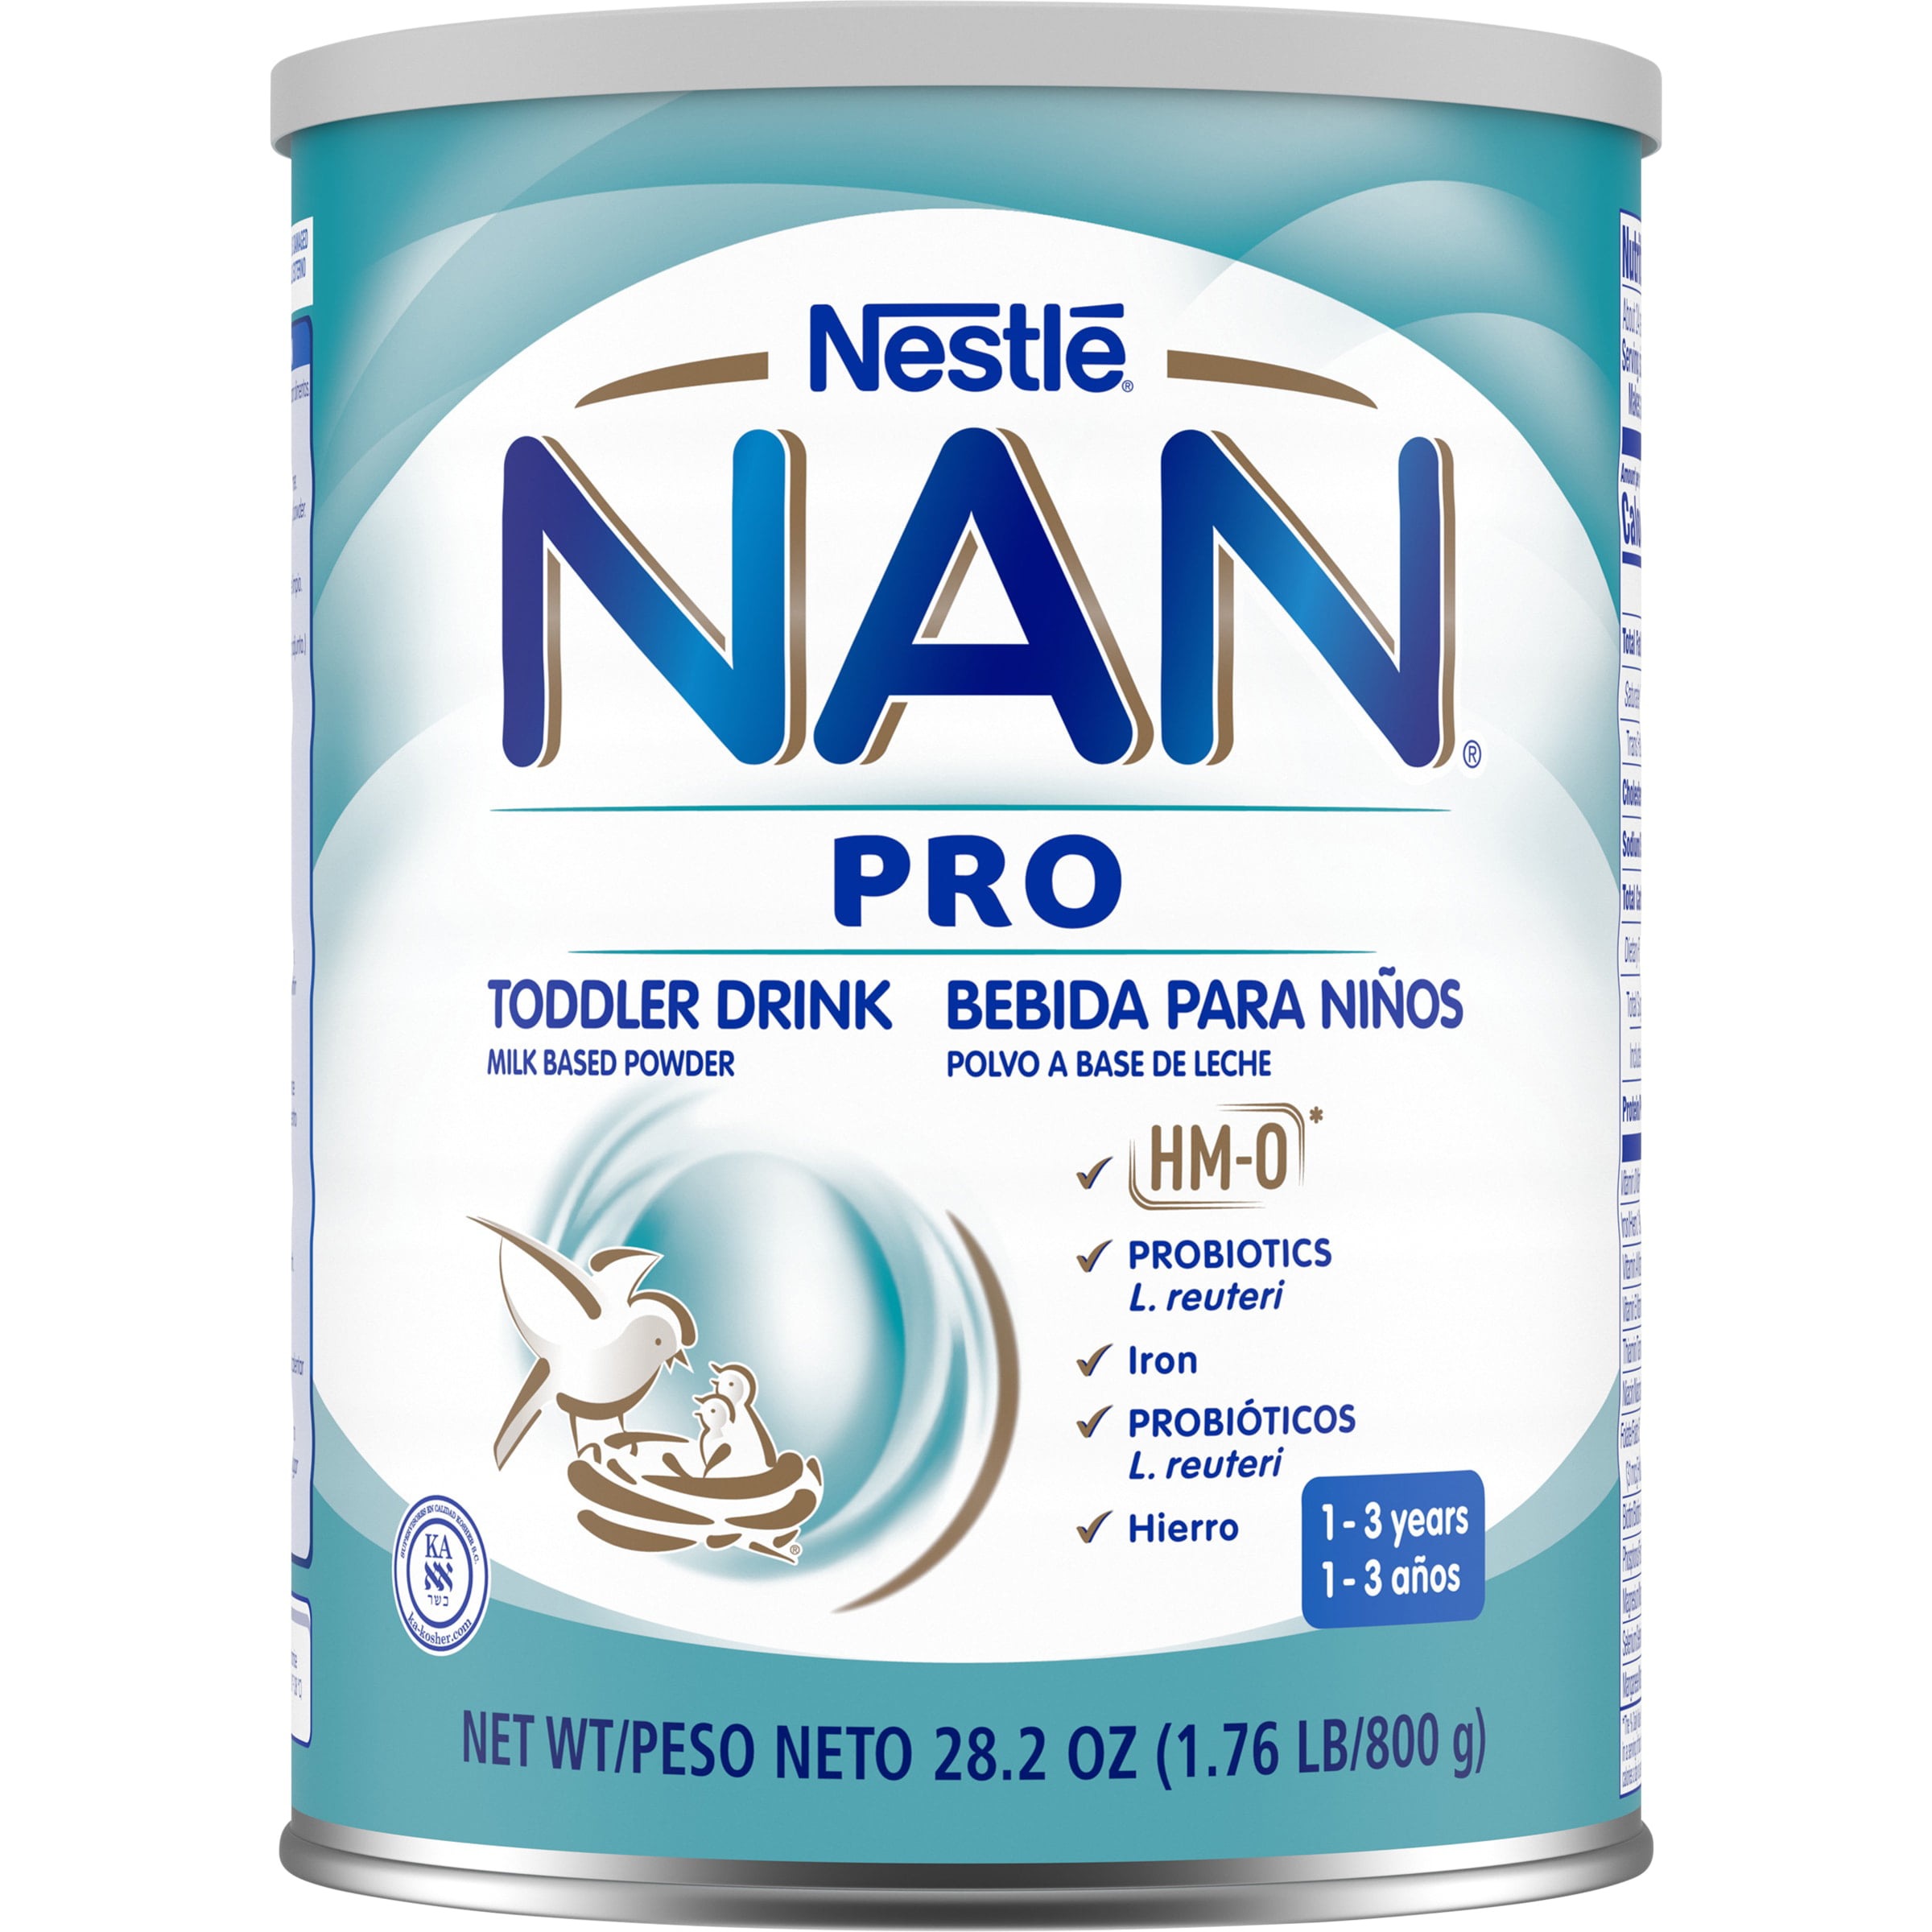 Nan Pro 3. Nan Pro 1. Нестле пре нан 85.